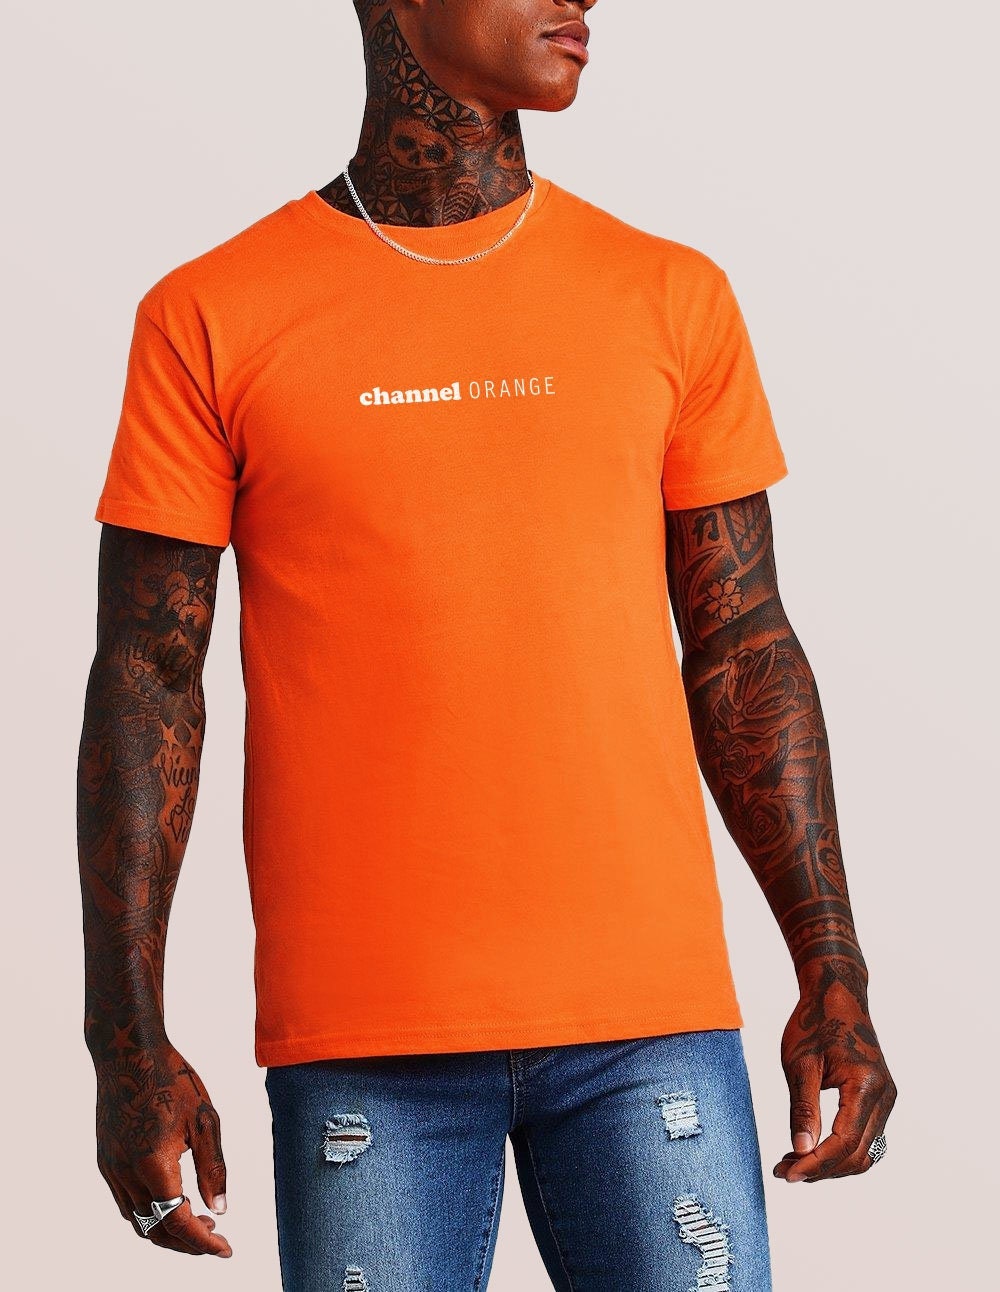 Frank Ocean Channel Orange Shirt Frank Ocean Fan Merch 